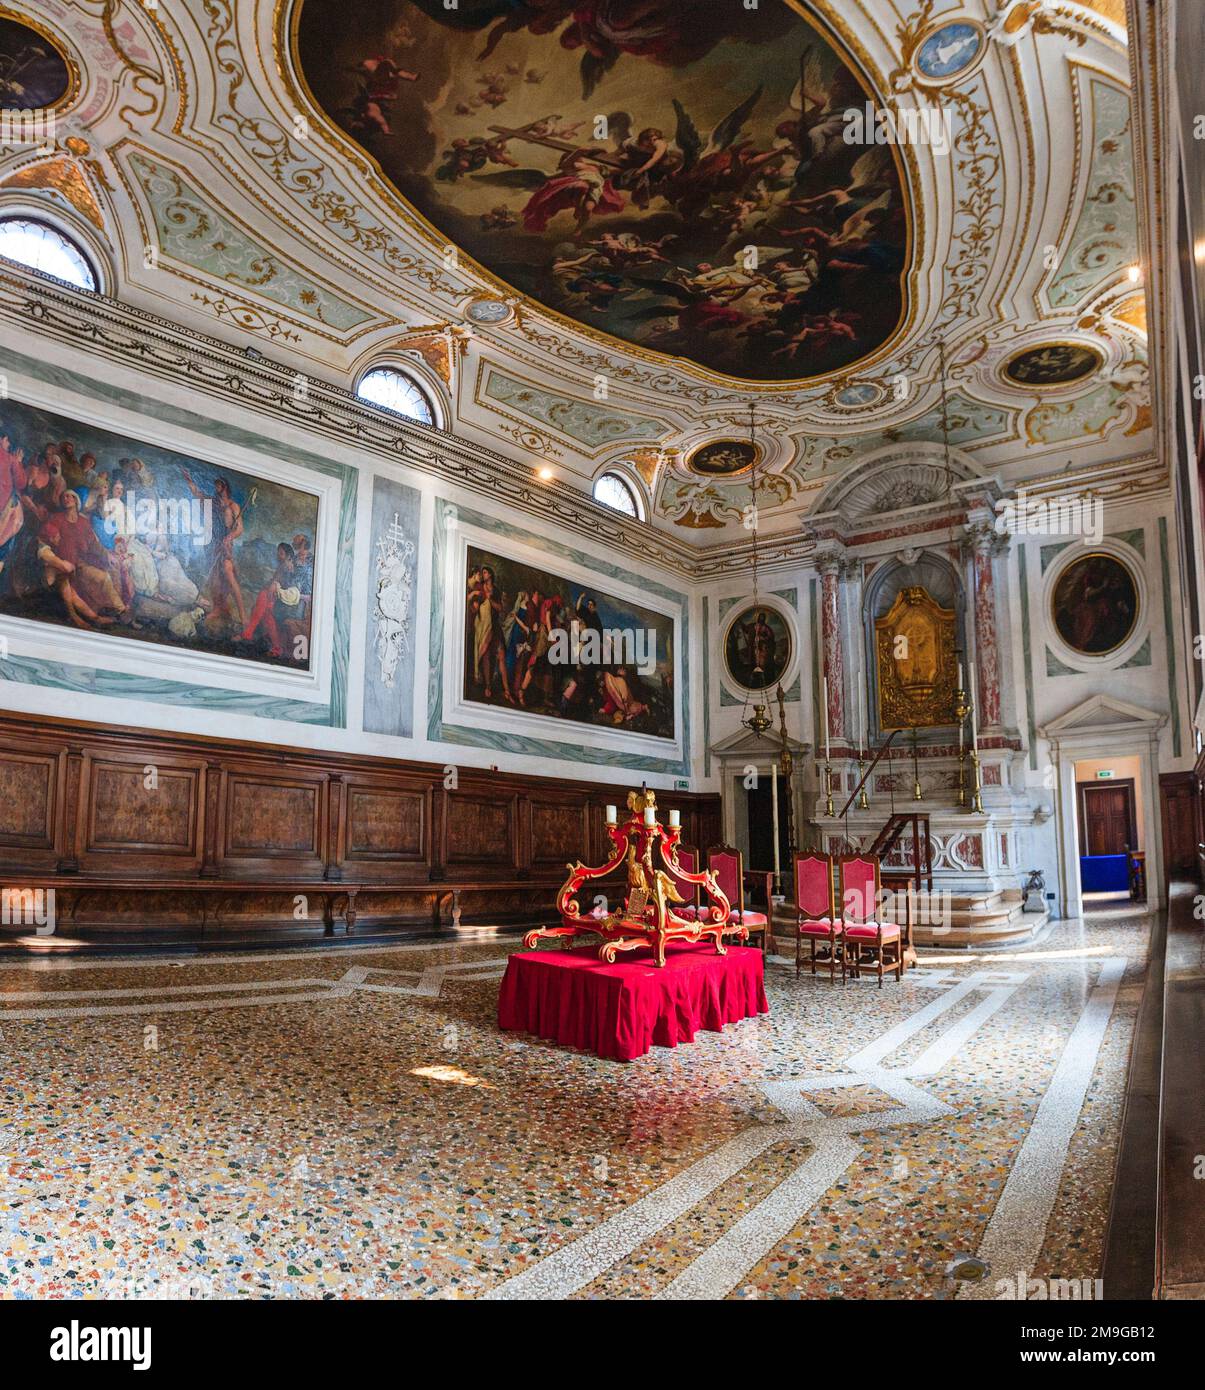 Intérieur du bâtiment historique, Venise, Italie Banque D'Images